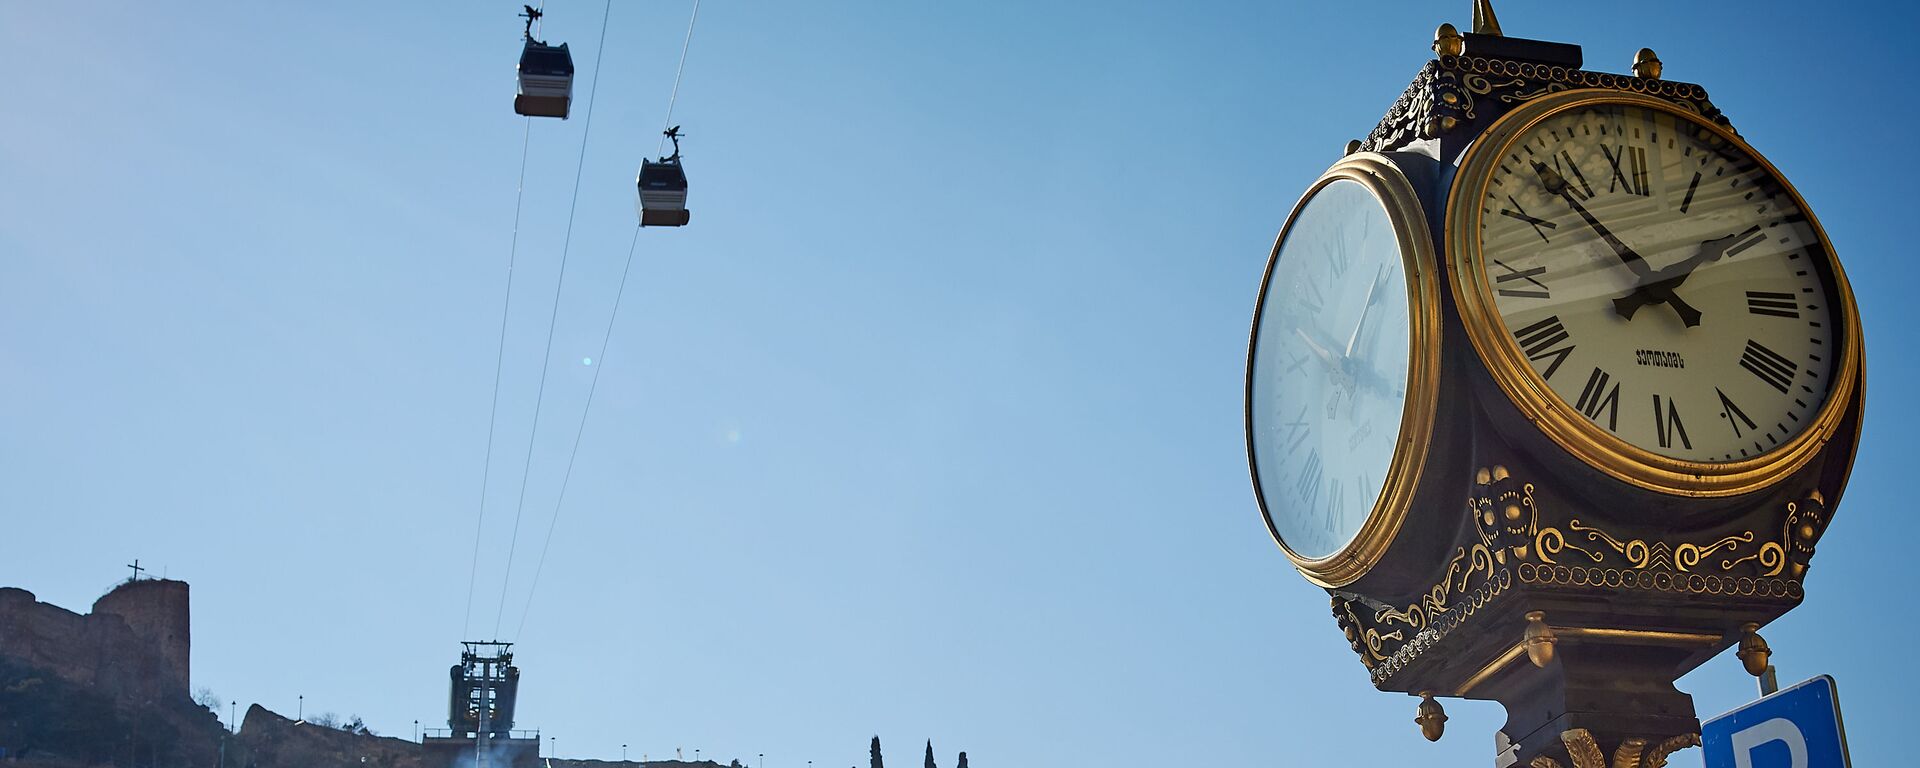 Уличные часы на Мейдане и канатная дорога. Город Тбилиси - Sputnik Грузия, 1920, 25.03.2020